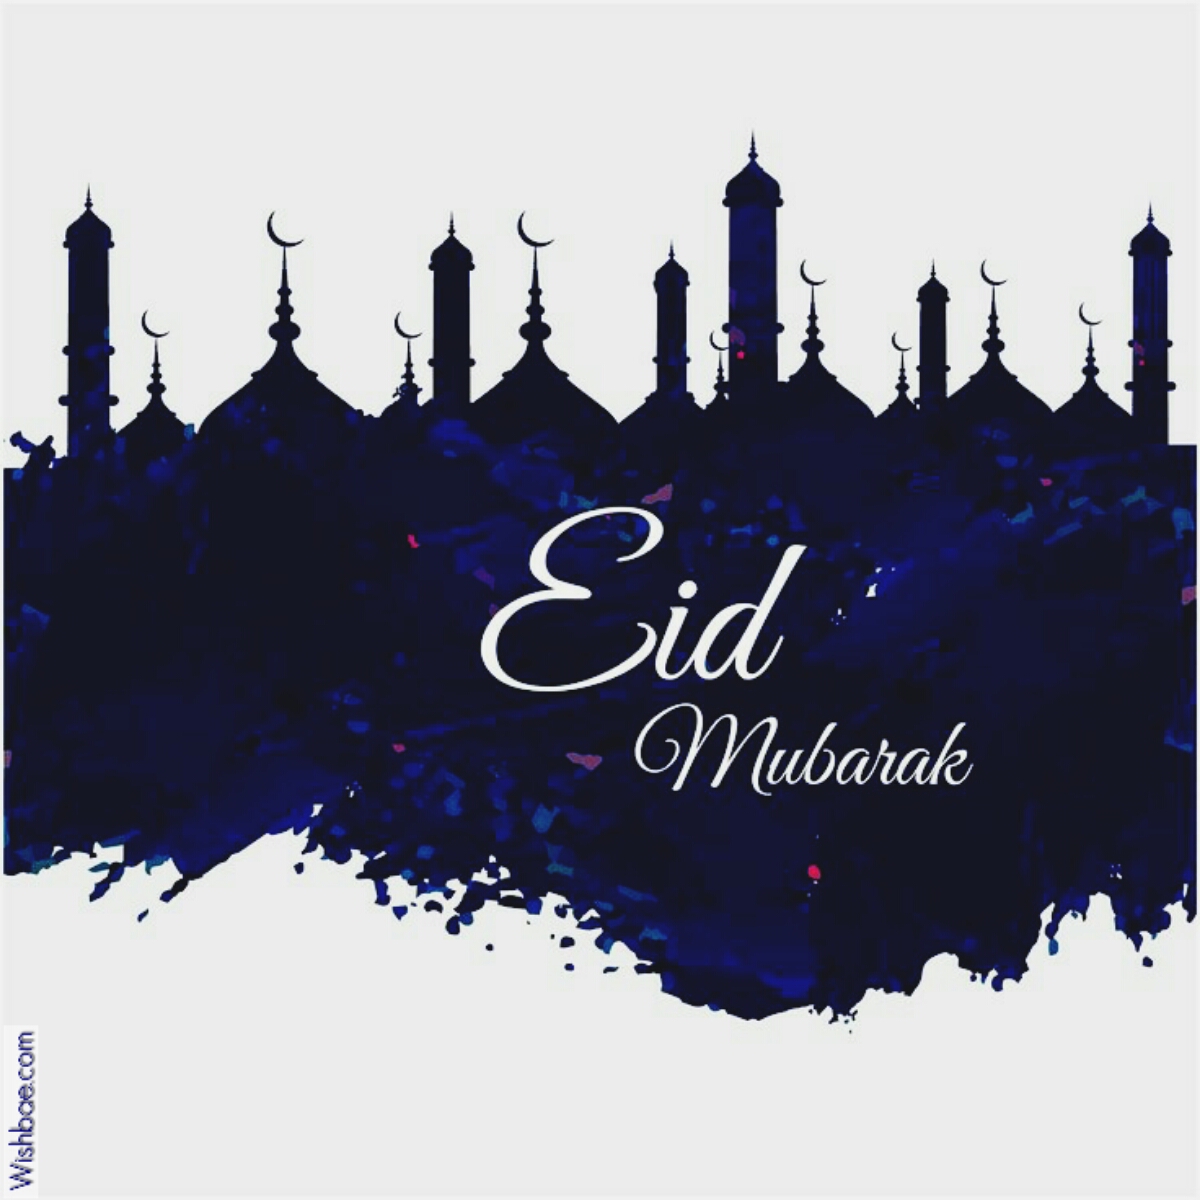 Eid Mubarak Images for Friends